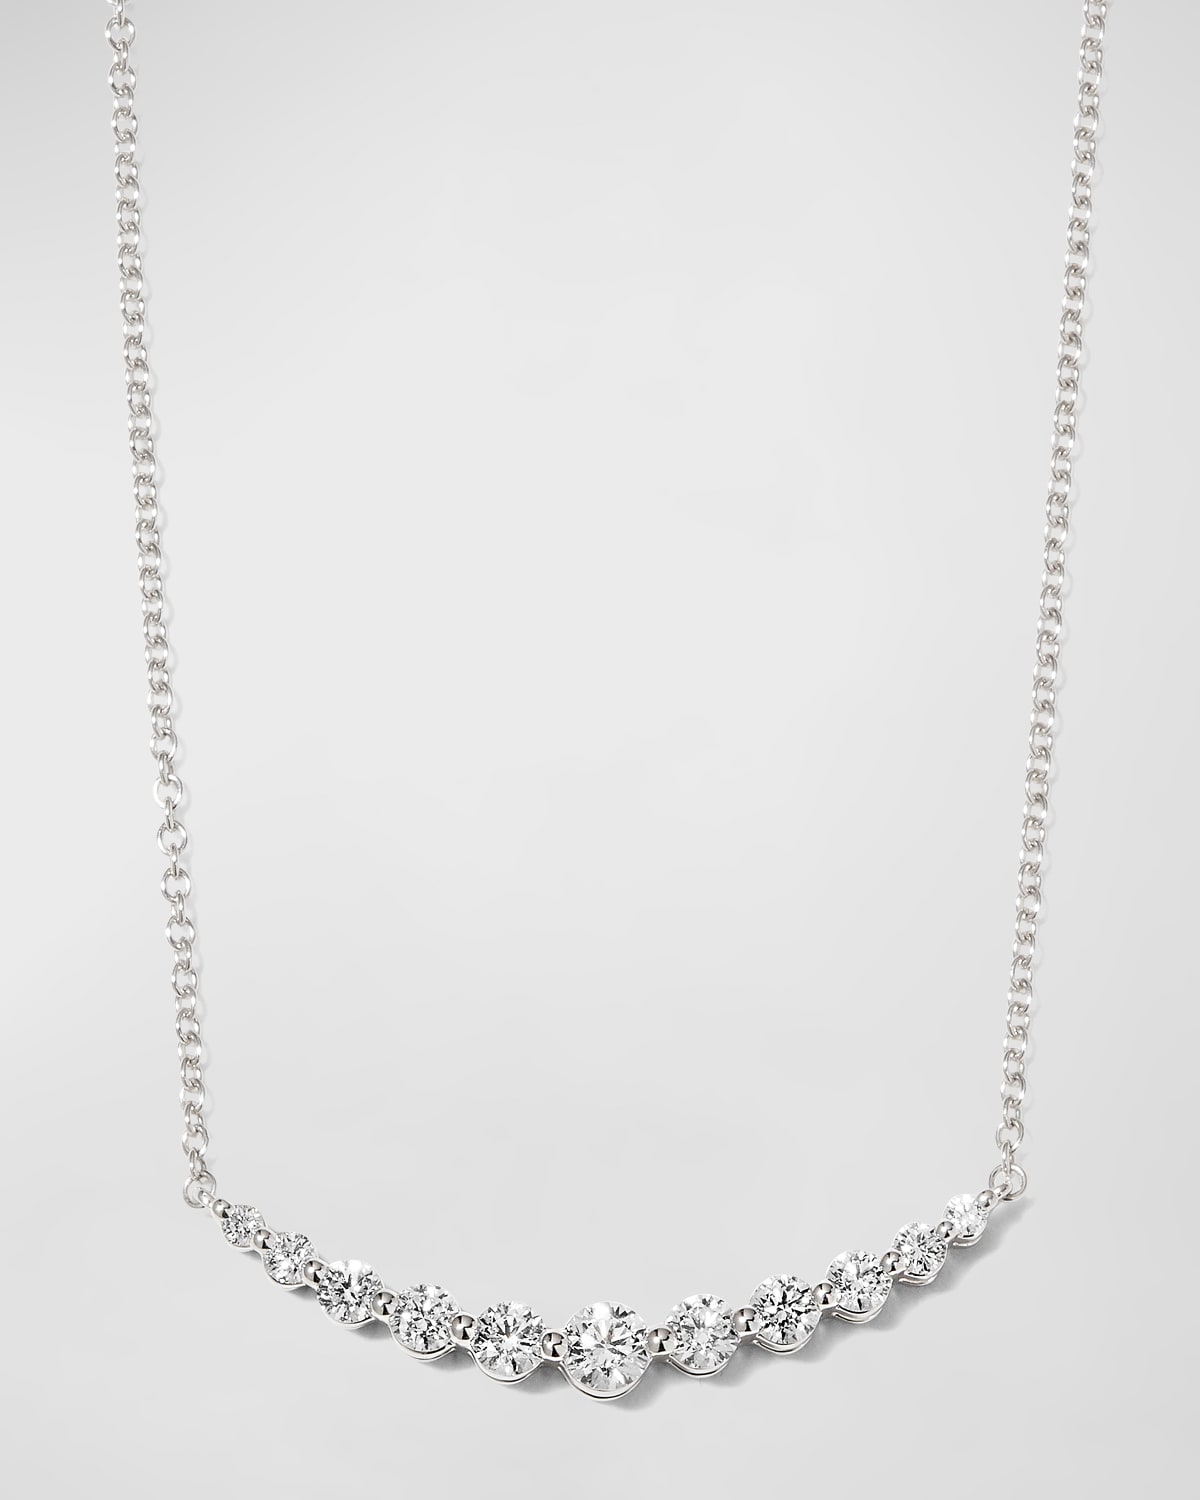 Memoire White Gold Round 11-Diamond Necklace, 18"L